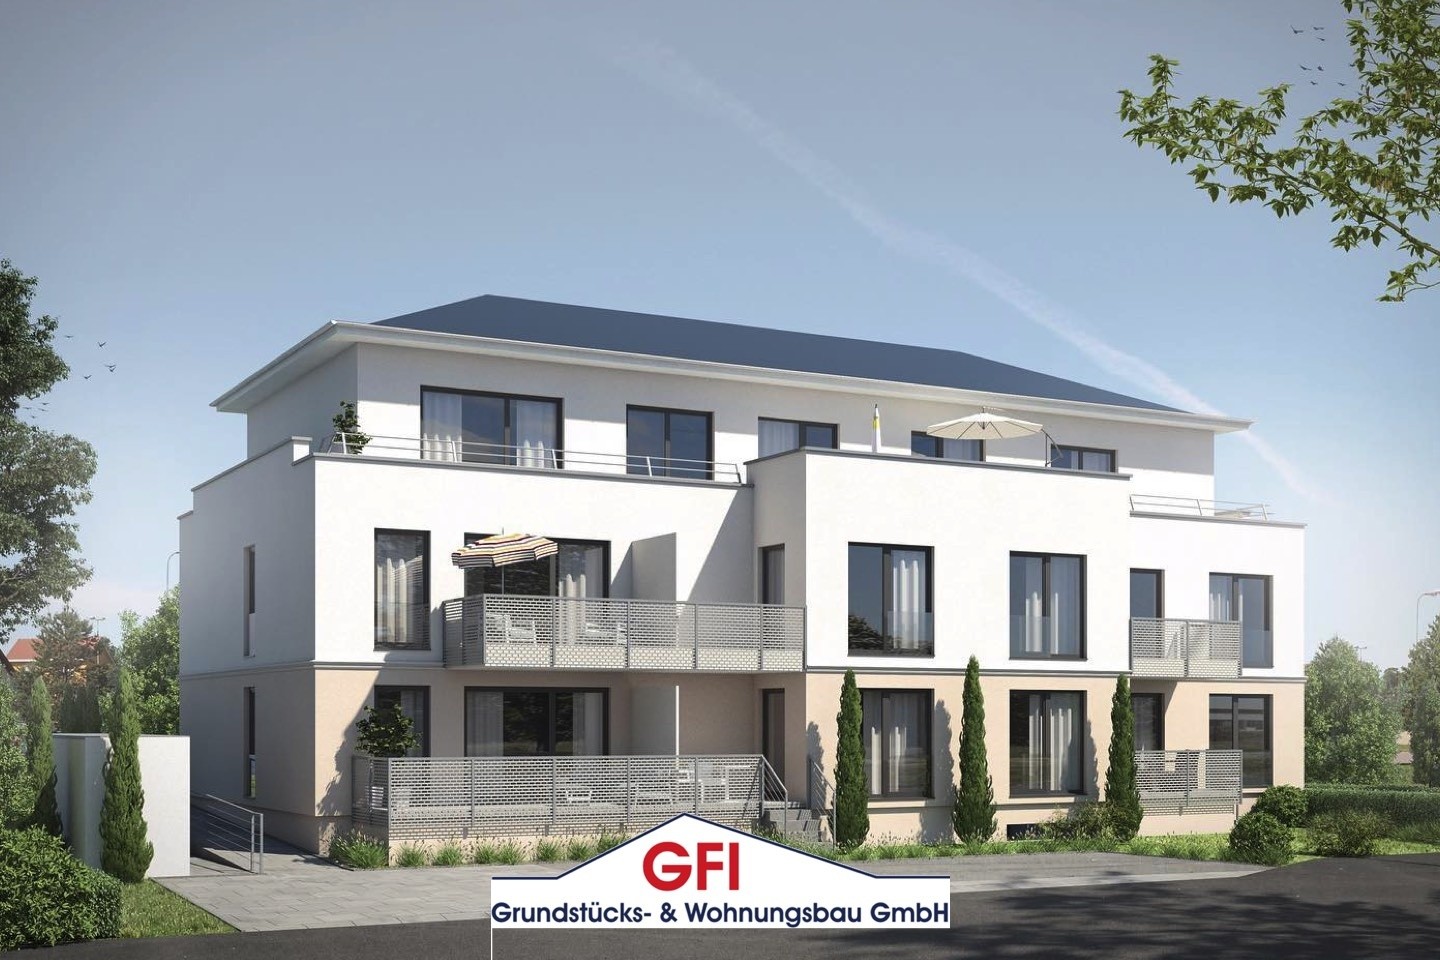 GFI Grundstücks- & Wohnungsbau,Eigentumswohnung,Einfamilienhaus,Warendorf,Münster,Vermittlung,Immobilienvermittlung,Mehrfamilienhaus,